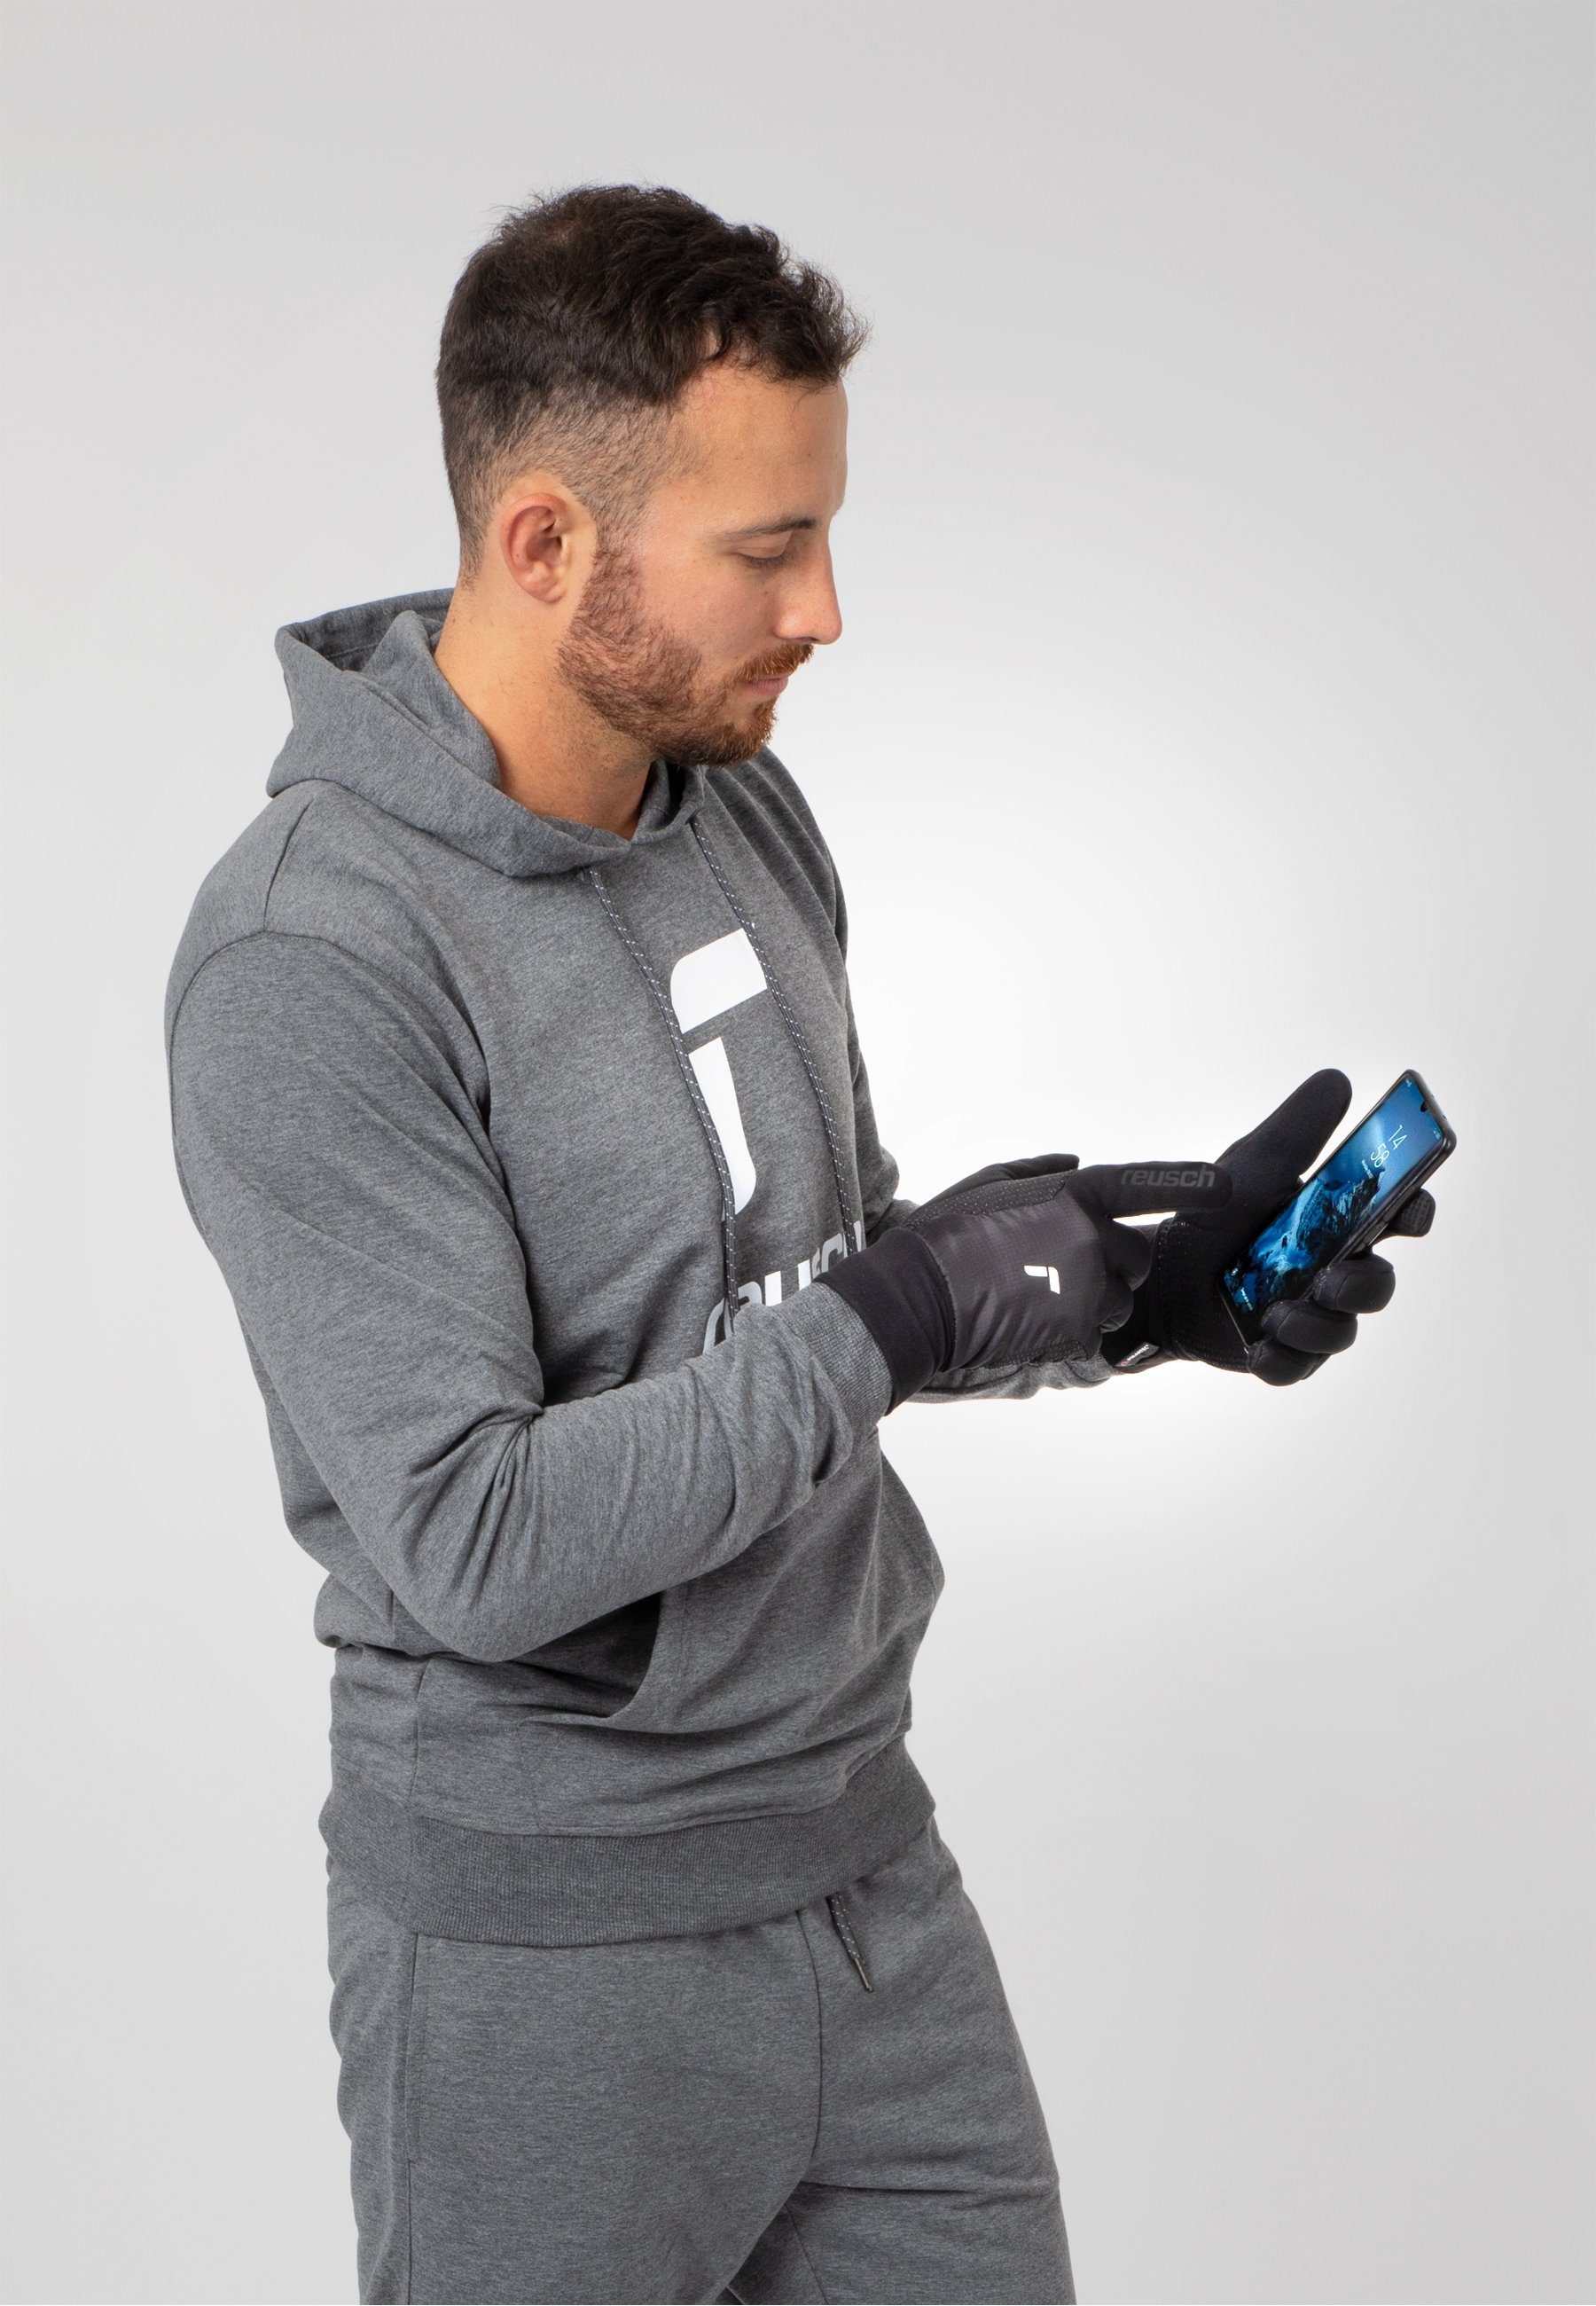 Garhwal praktischer Reusch Skihandschuhe schwarz-silberfarben mit Hybrid Touchscreen-Funktion